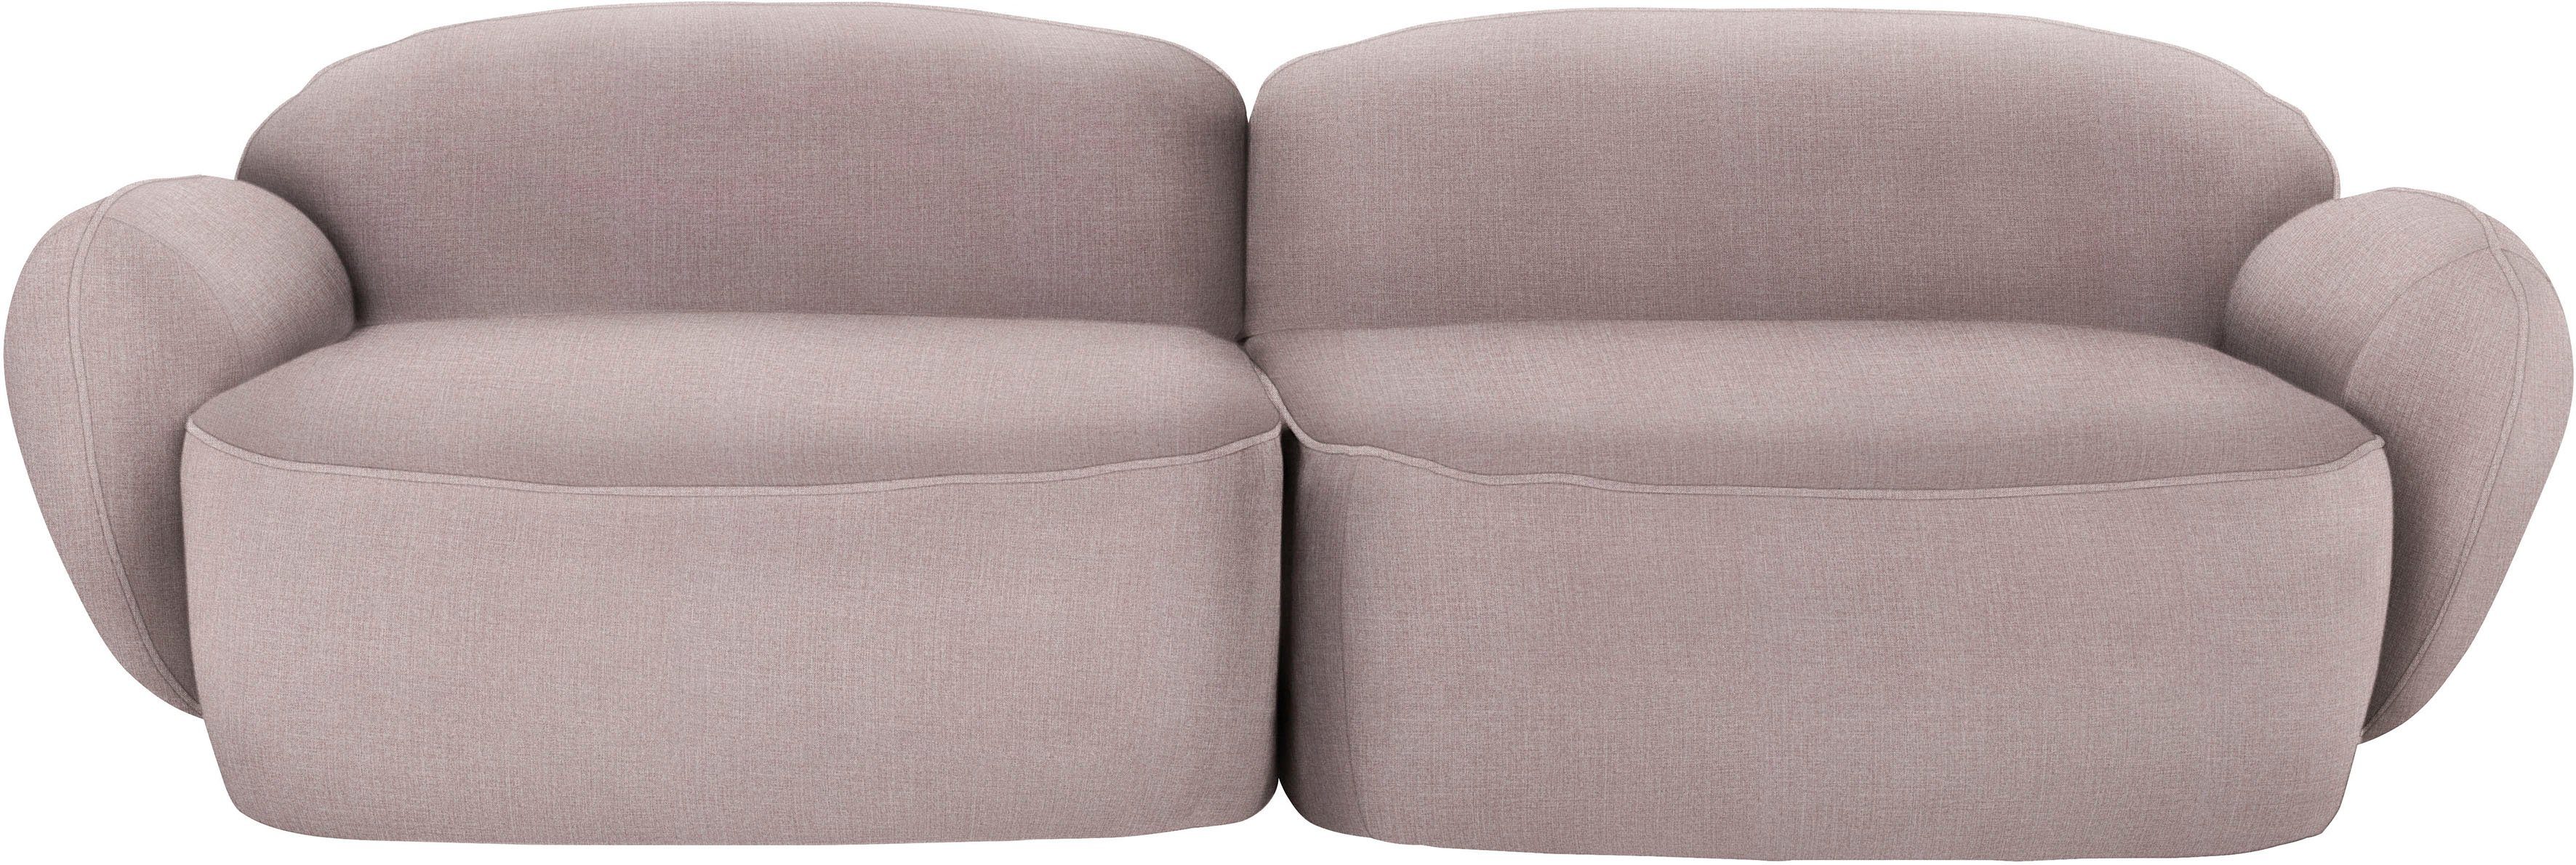 furninova Memoryschaum, skandinavischen 2,5-Sitzer durch komfortabel Design Bubble, im